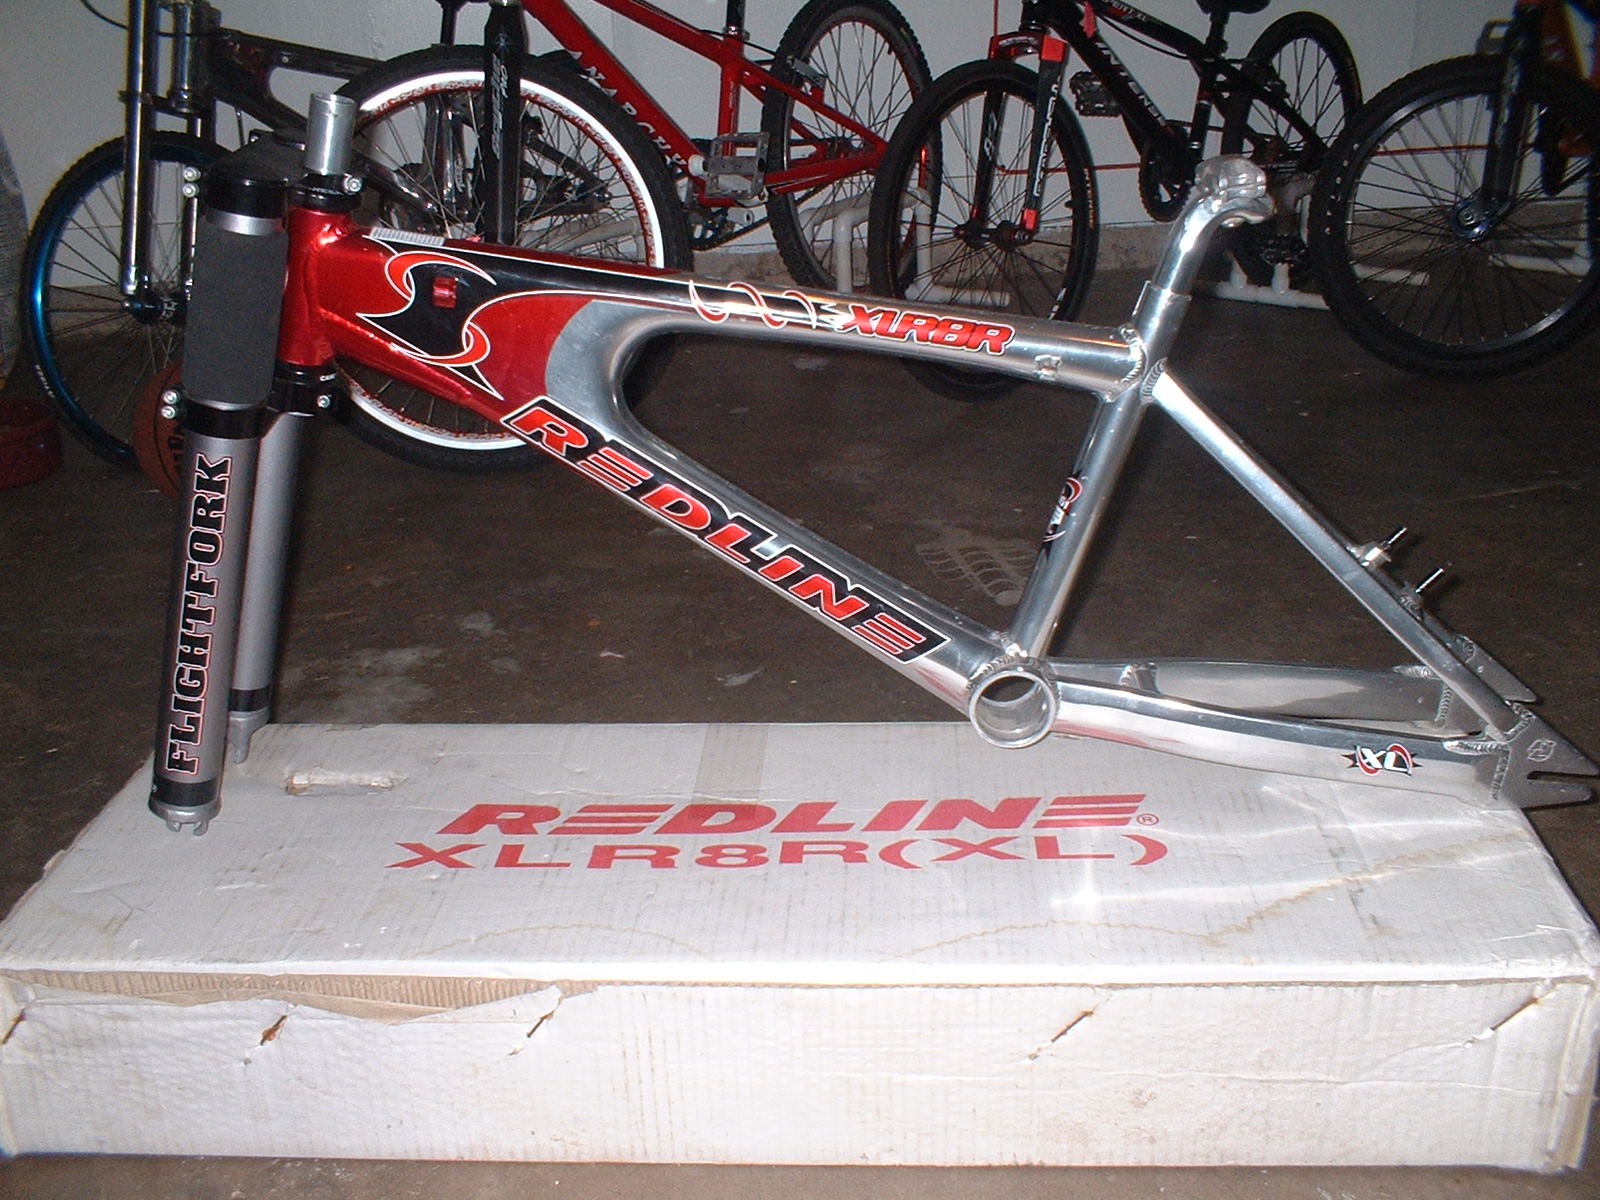 redline monster bike